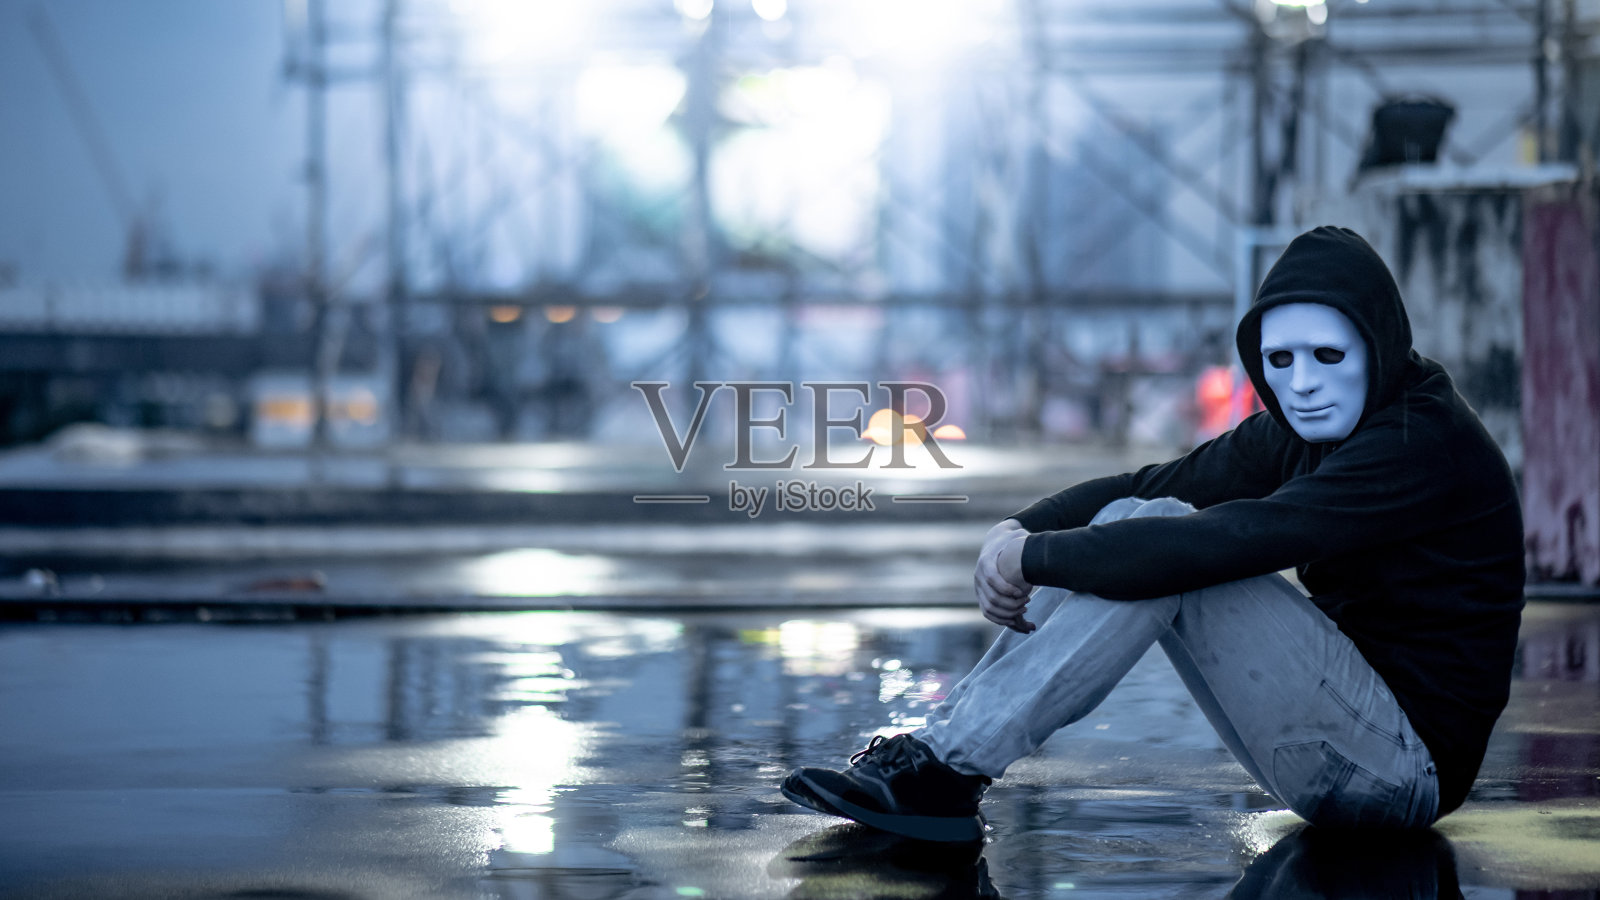 这是一个穿着白色面罩的神秘帽衫男子抱着膝盖坐在废弃建筑的屋顶上淋雨的画面。双相情感障碍或重度抑郁症。抑郁症的概念照片摄影图片